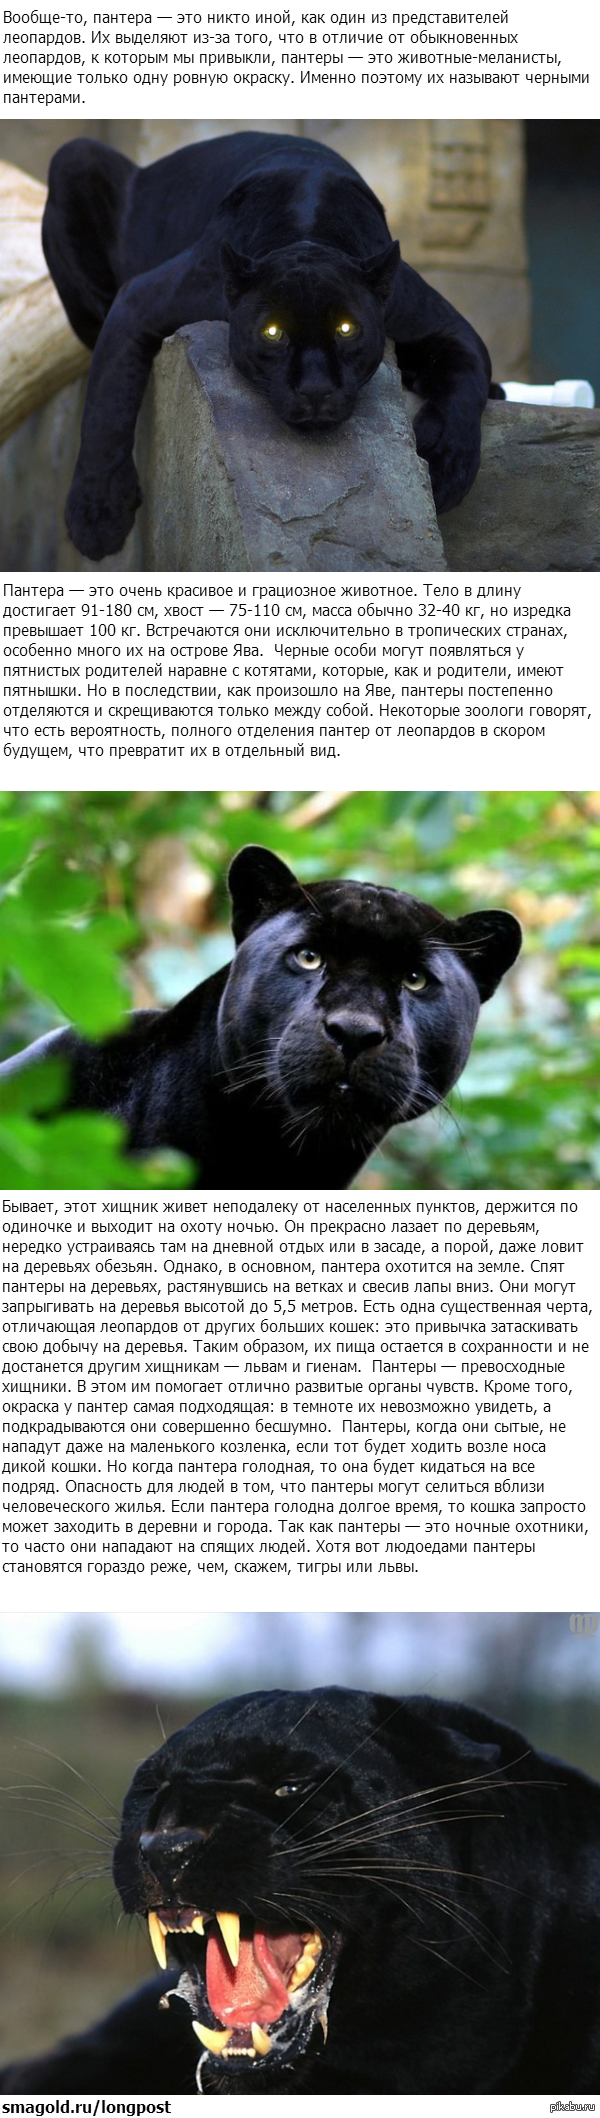 Пантера черная характеристики. Пантера животное описание. Интересные факты о черной пантере. Кот похожий на пантеру. Доклад про пантеру.